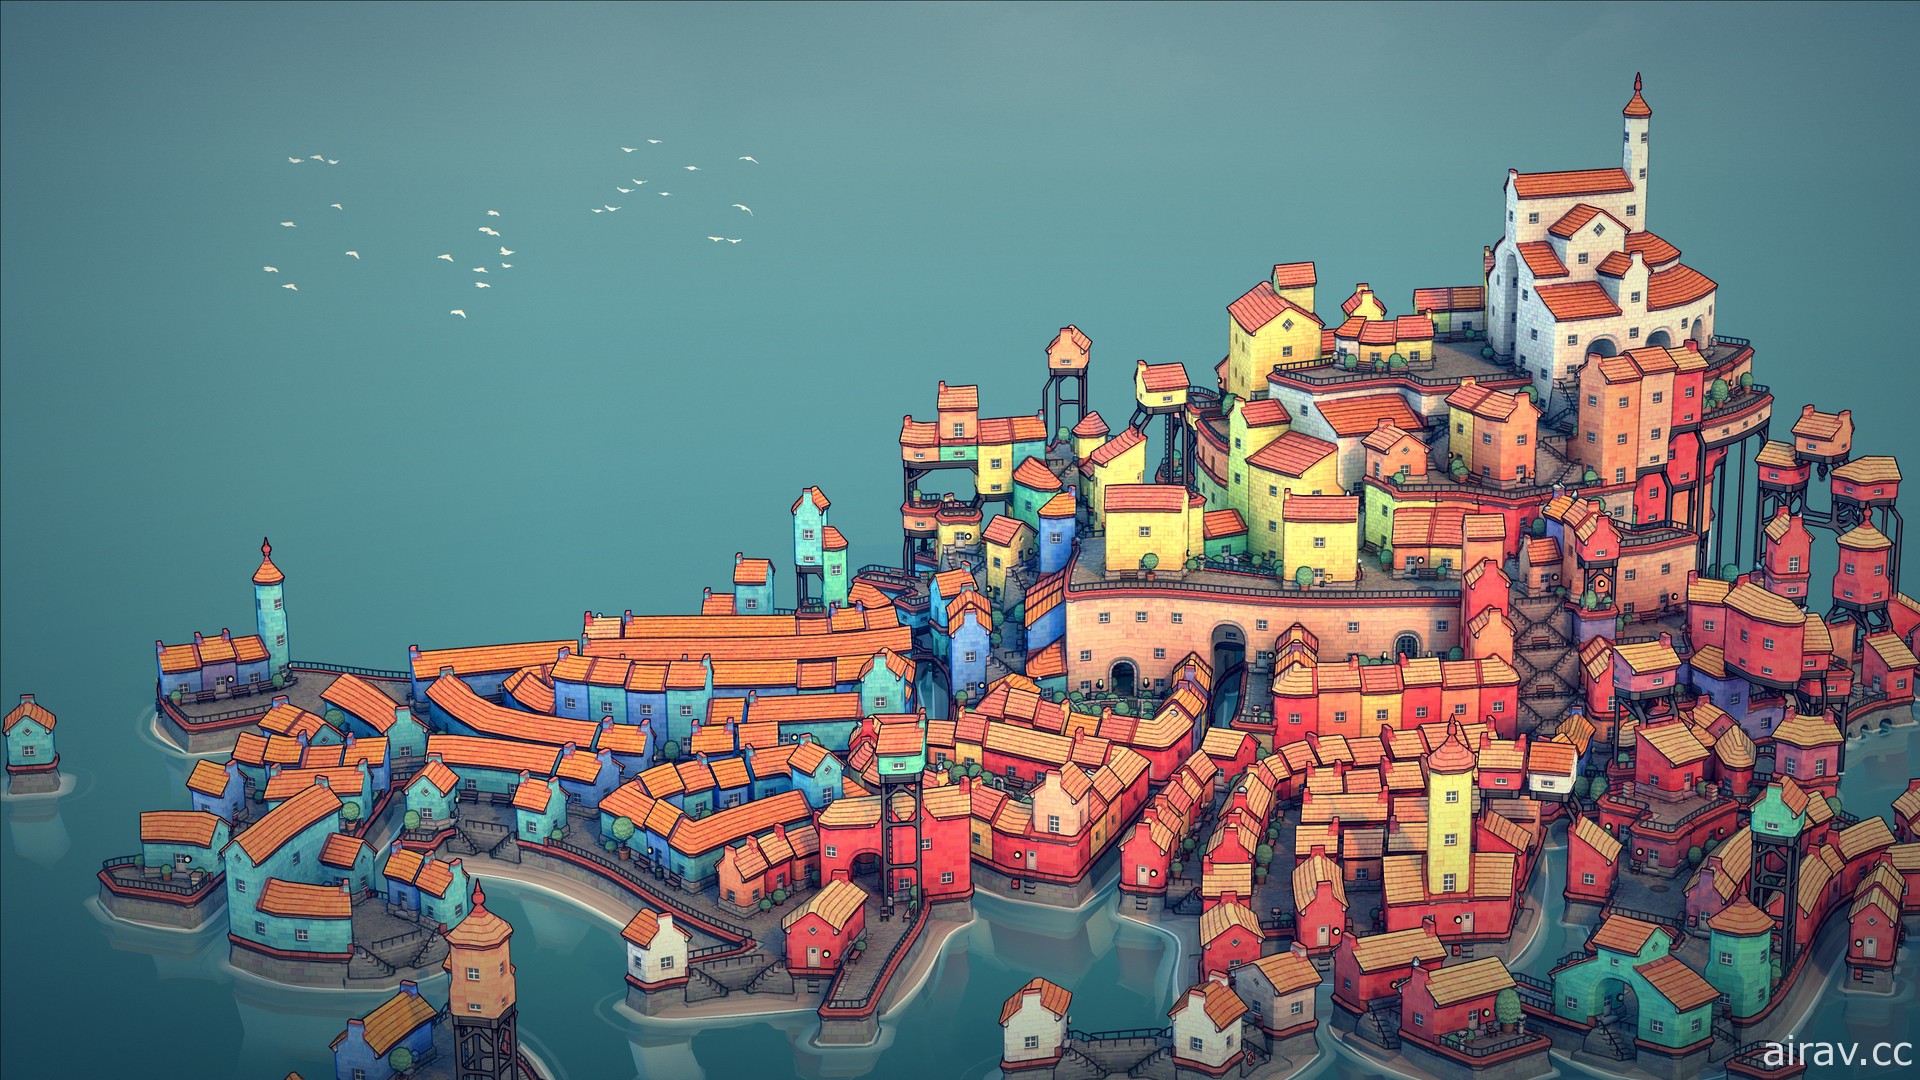 城镇模拟游戏《Townscaper》登陆 PC、NS 平台 预计 10 月推出行动装置版本